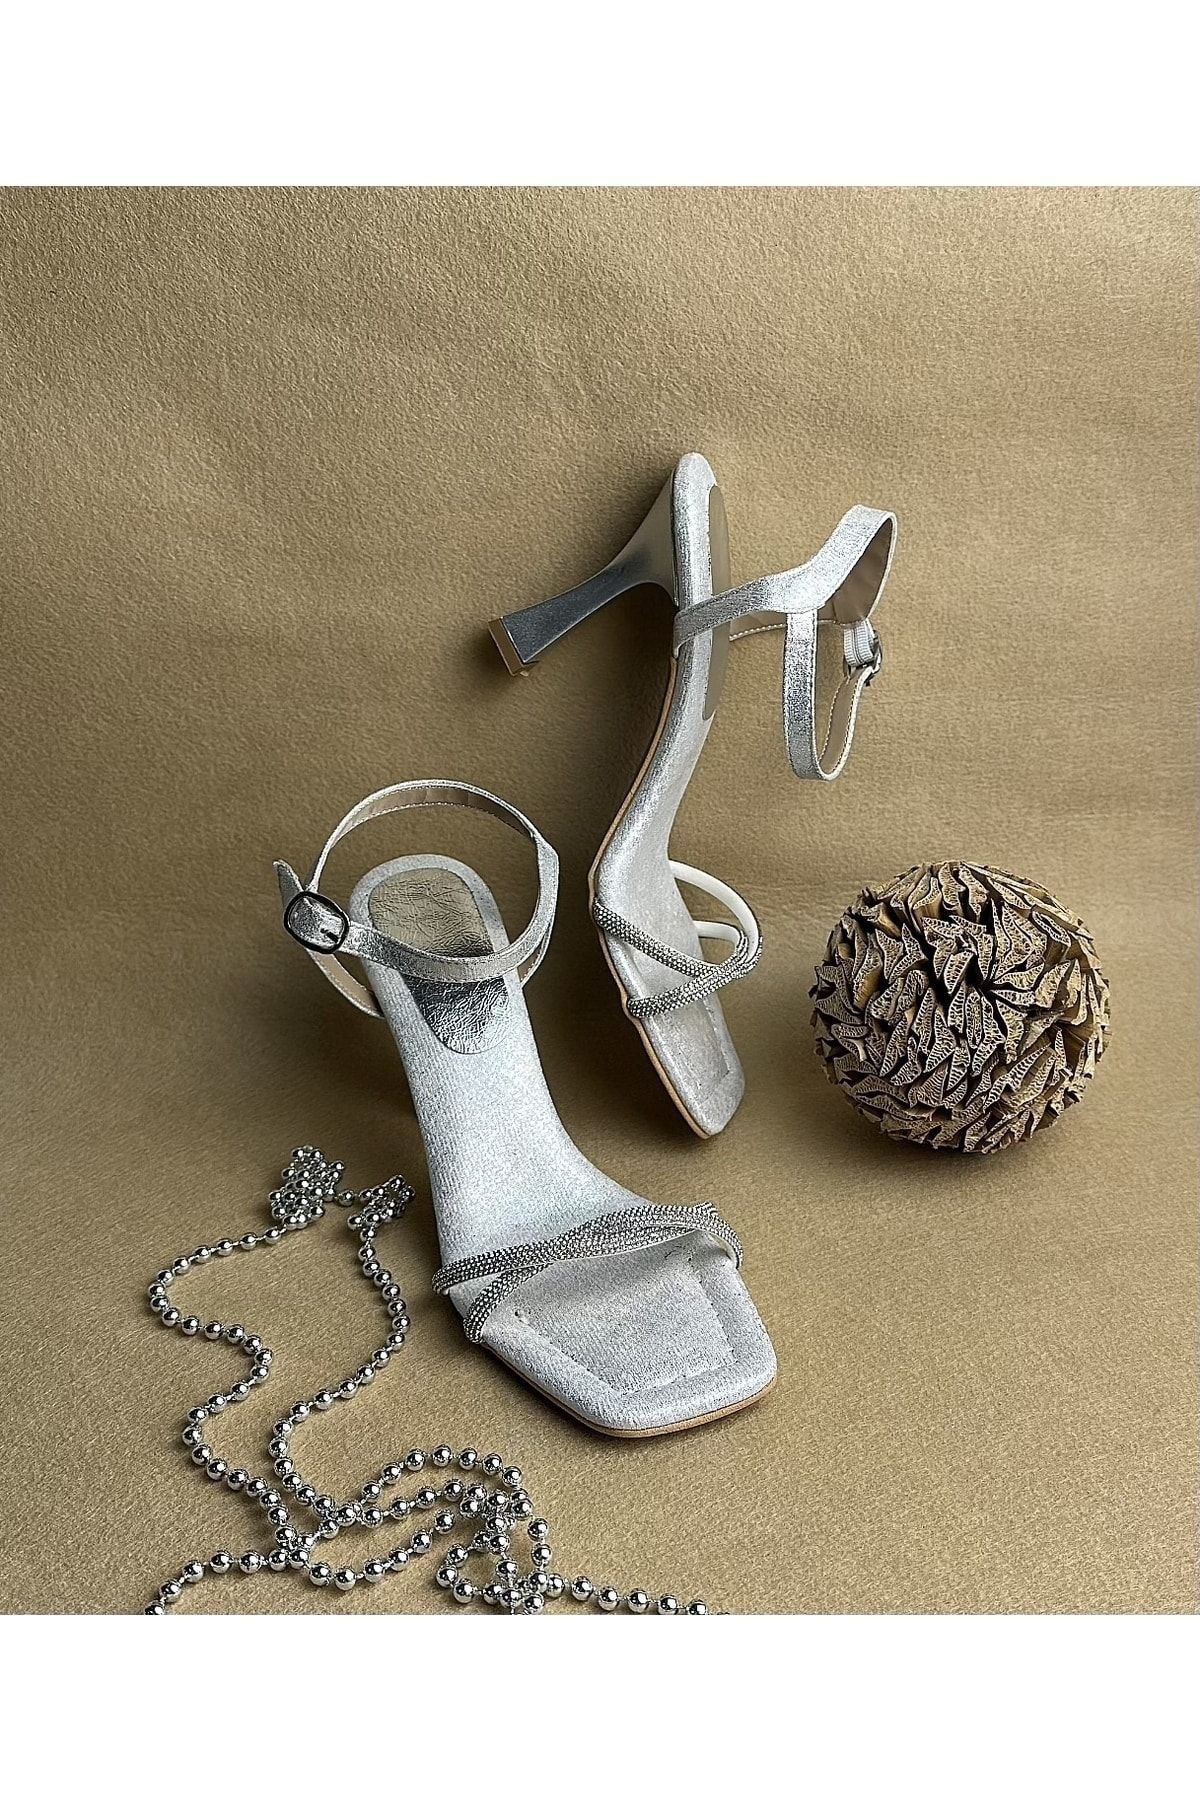 Gloriys Ayakkabı & Çanta Gümüş Taşlı 9 Cm Topuklu Ayakkabı Ortopedik Süngerli Taban